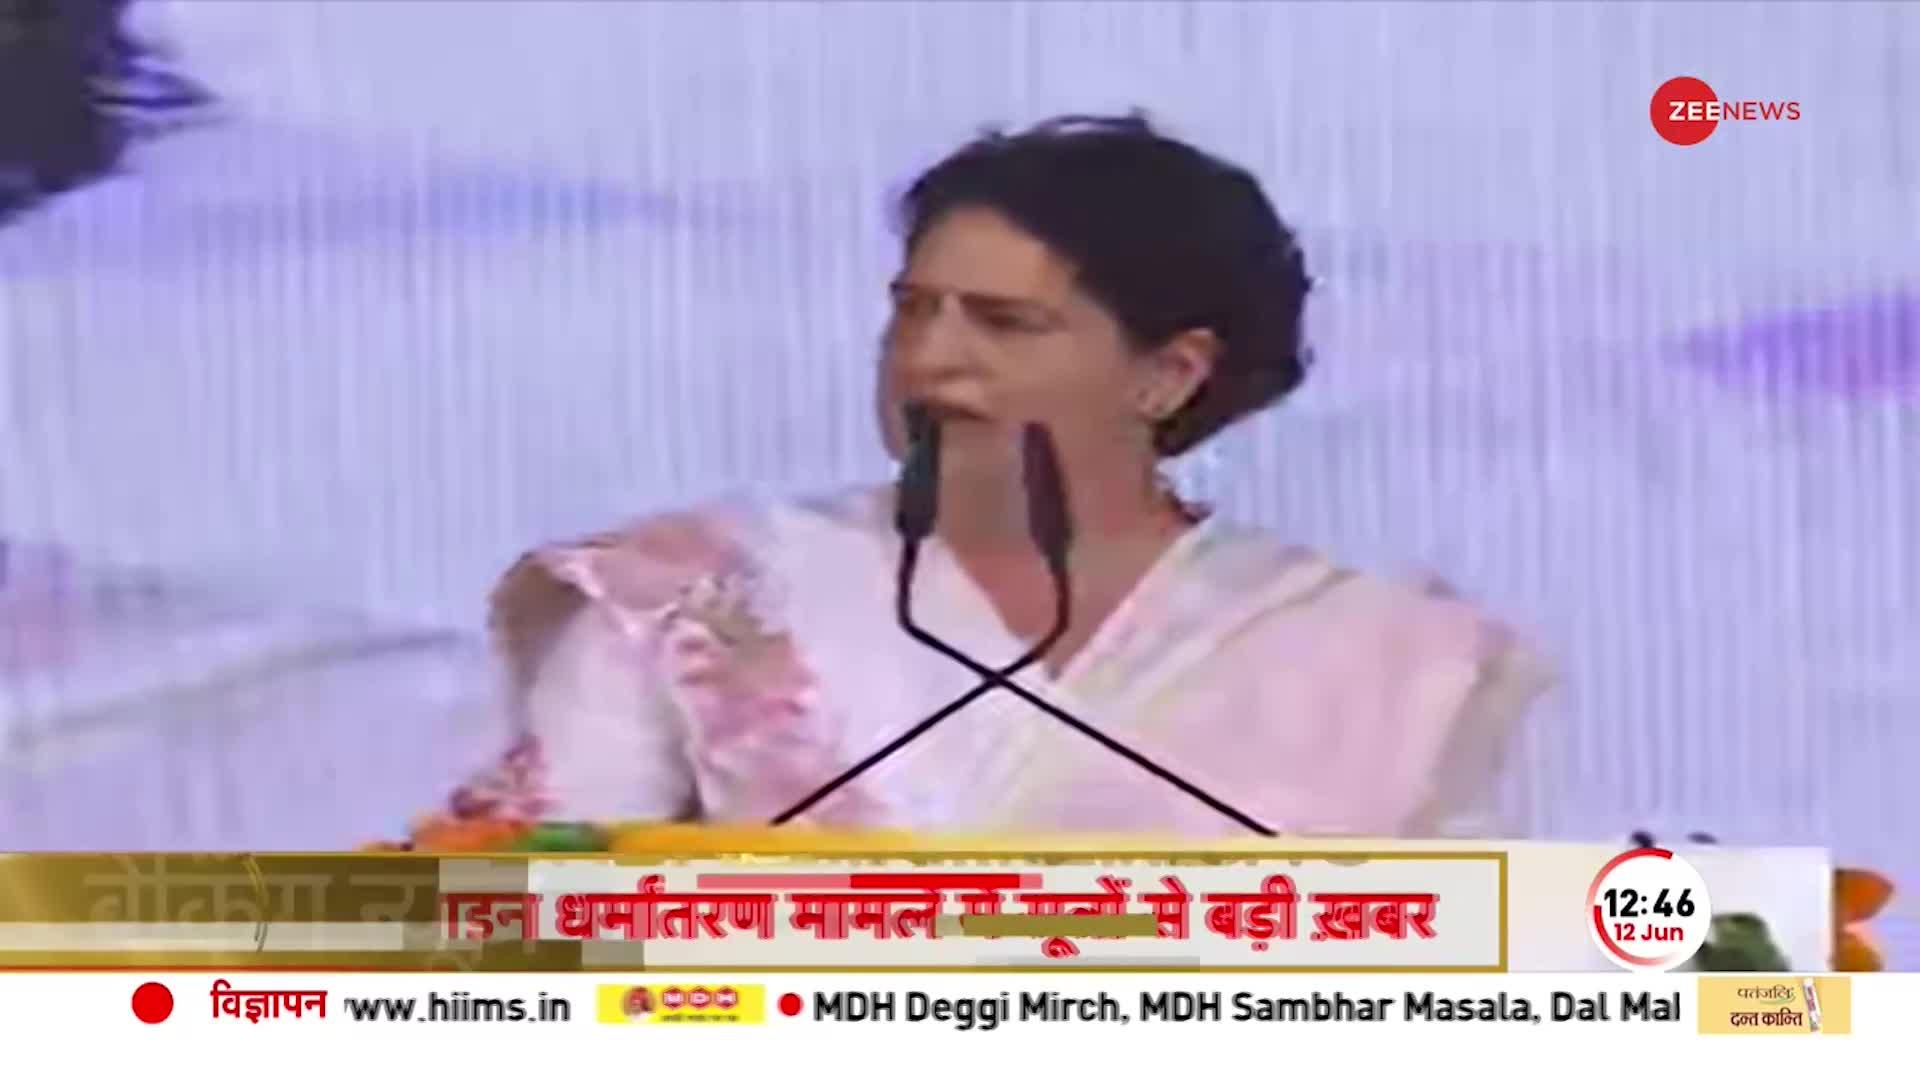 Priyanka Gandhi MP Speech: Jabalpur में प्रियंका गांधी वाड्रा का संबोधन